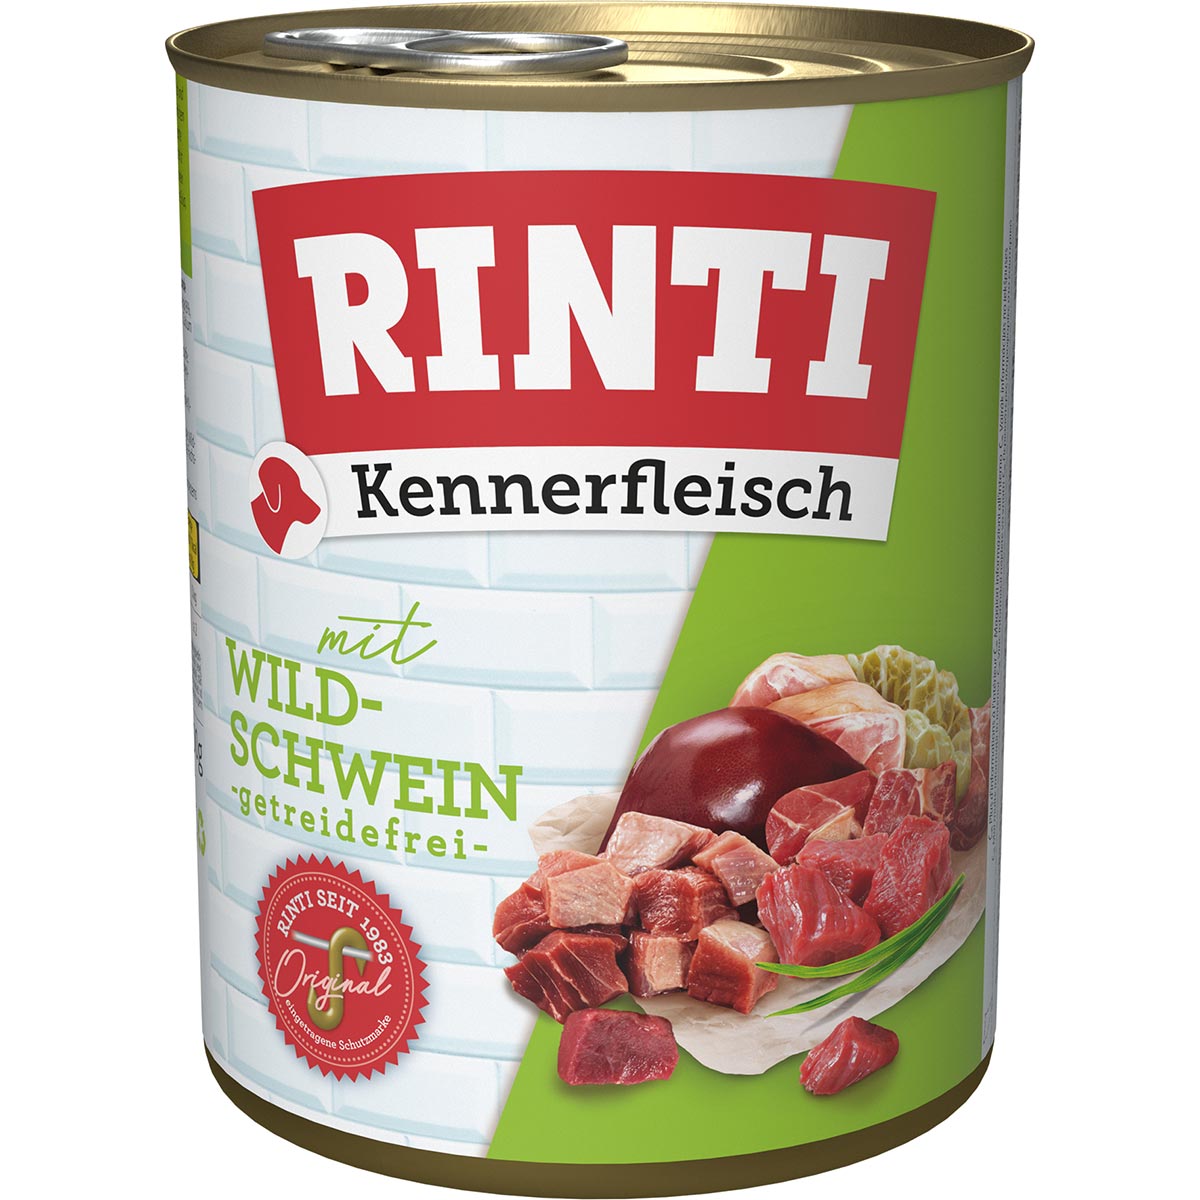 Rinti Kennerfleisch Wildschwein 24x800g von Rinti